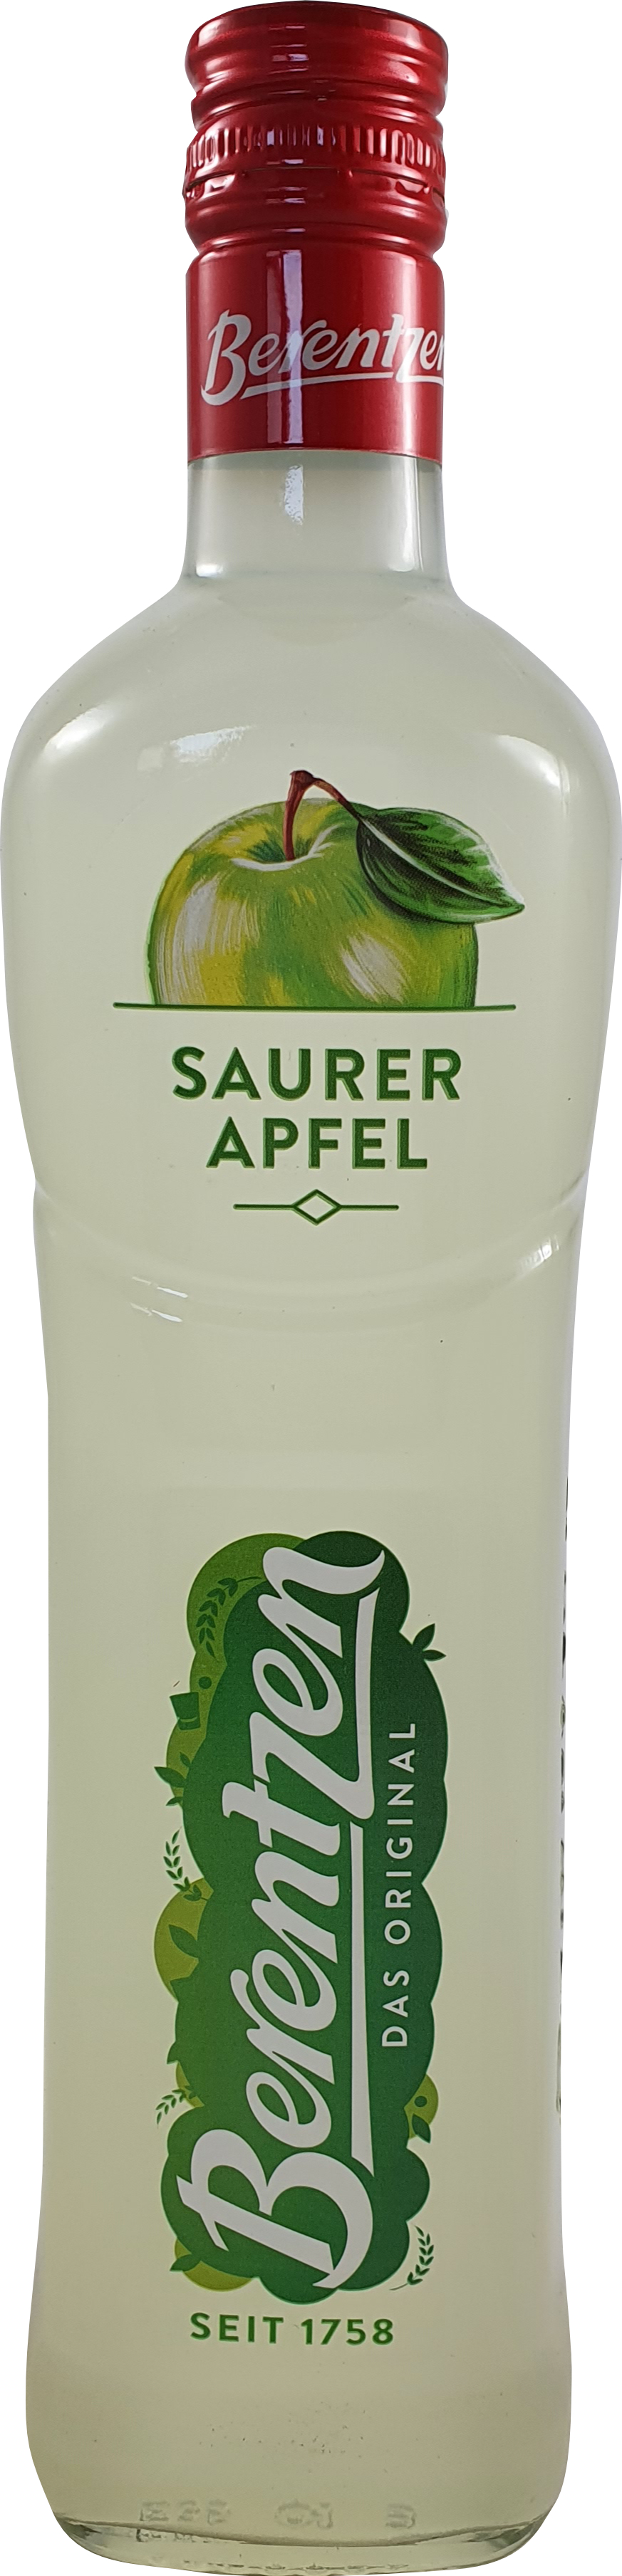 Berentzen Saurer 0,70L Apfel